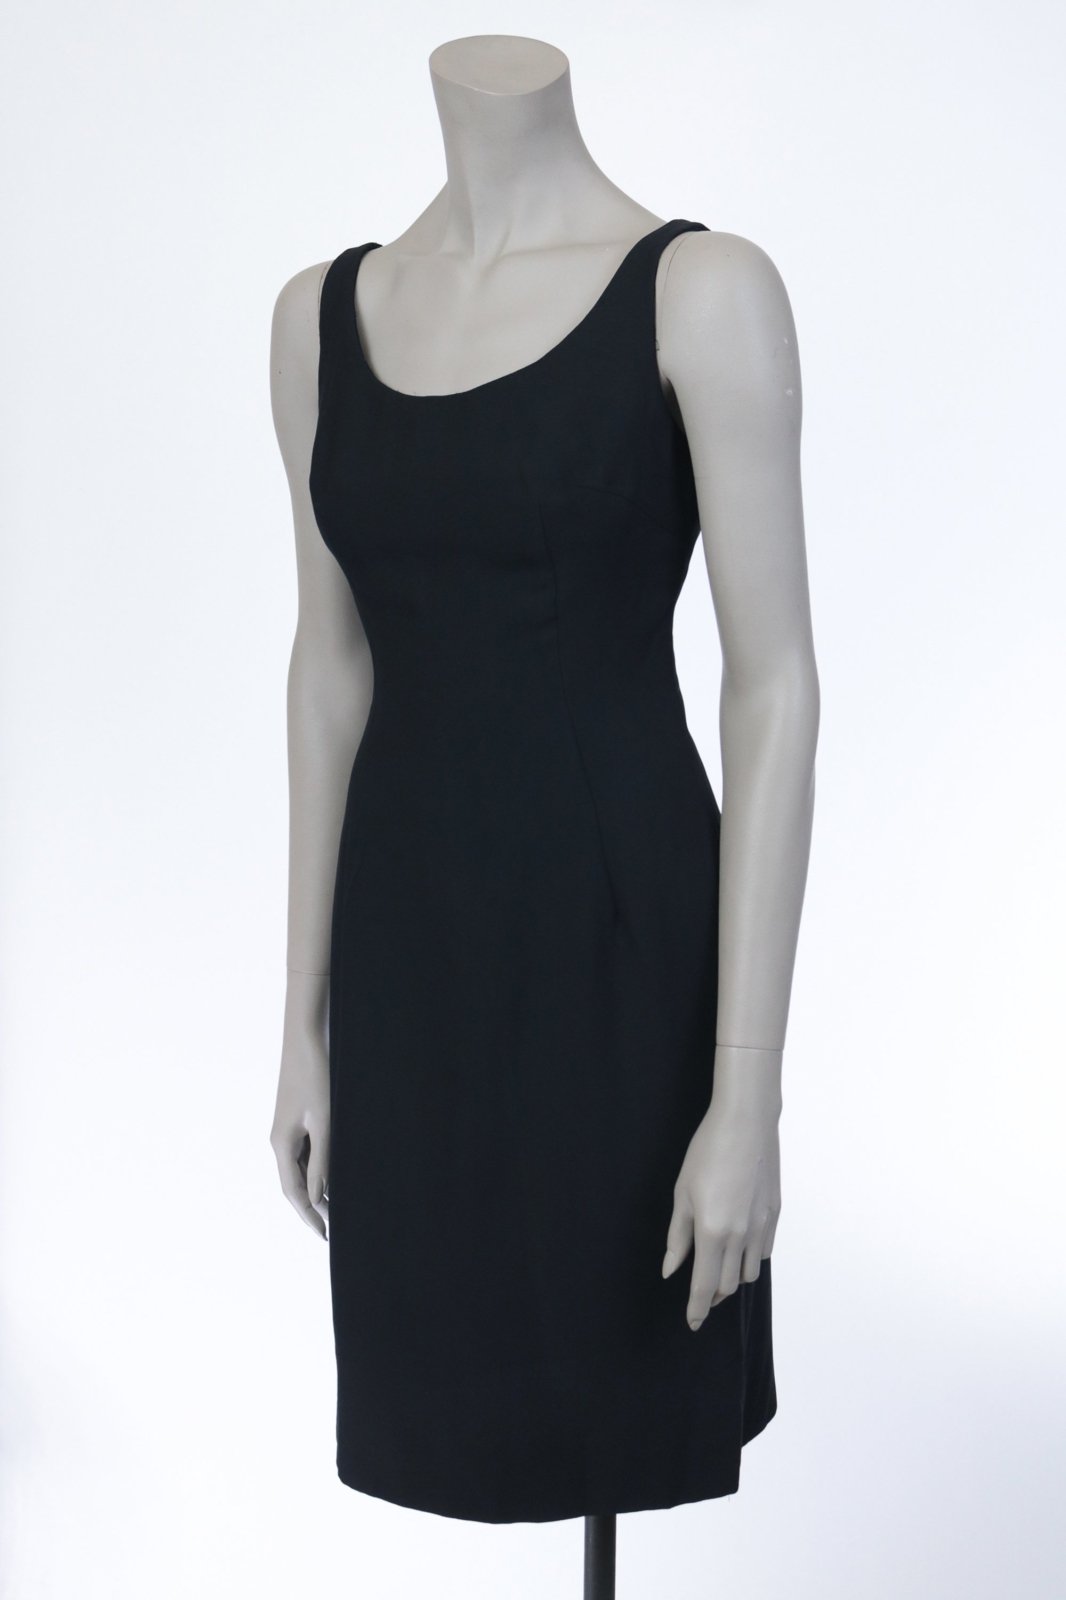 1960s Minimalist Black Sheath Dress - Floria Vintage